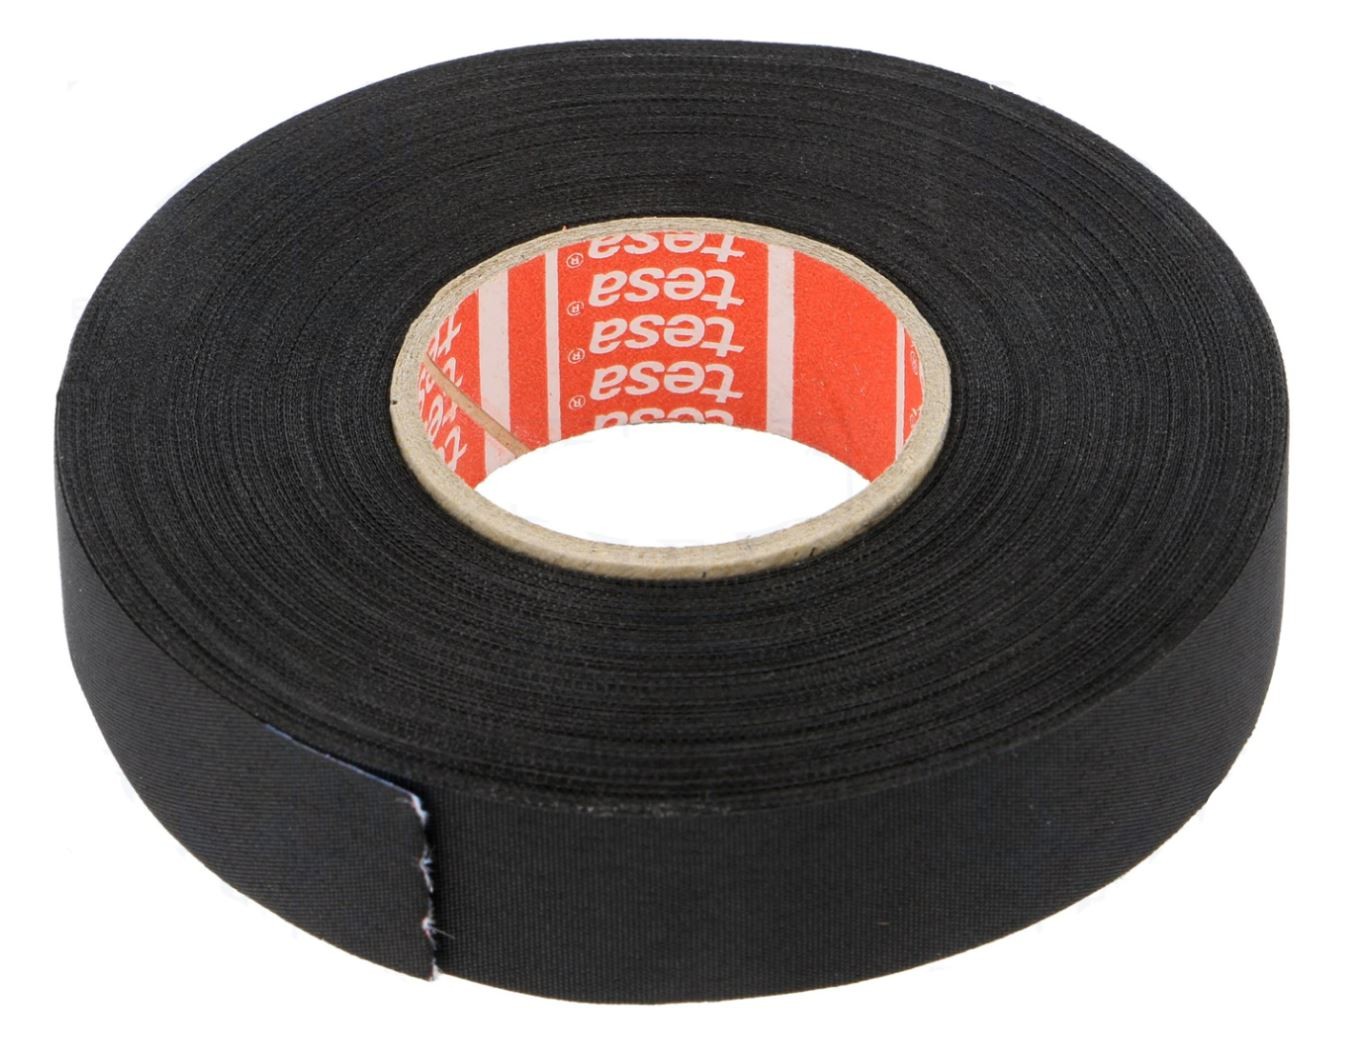 PET textilní páska Tesa 51026 19/25